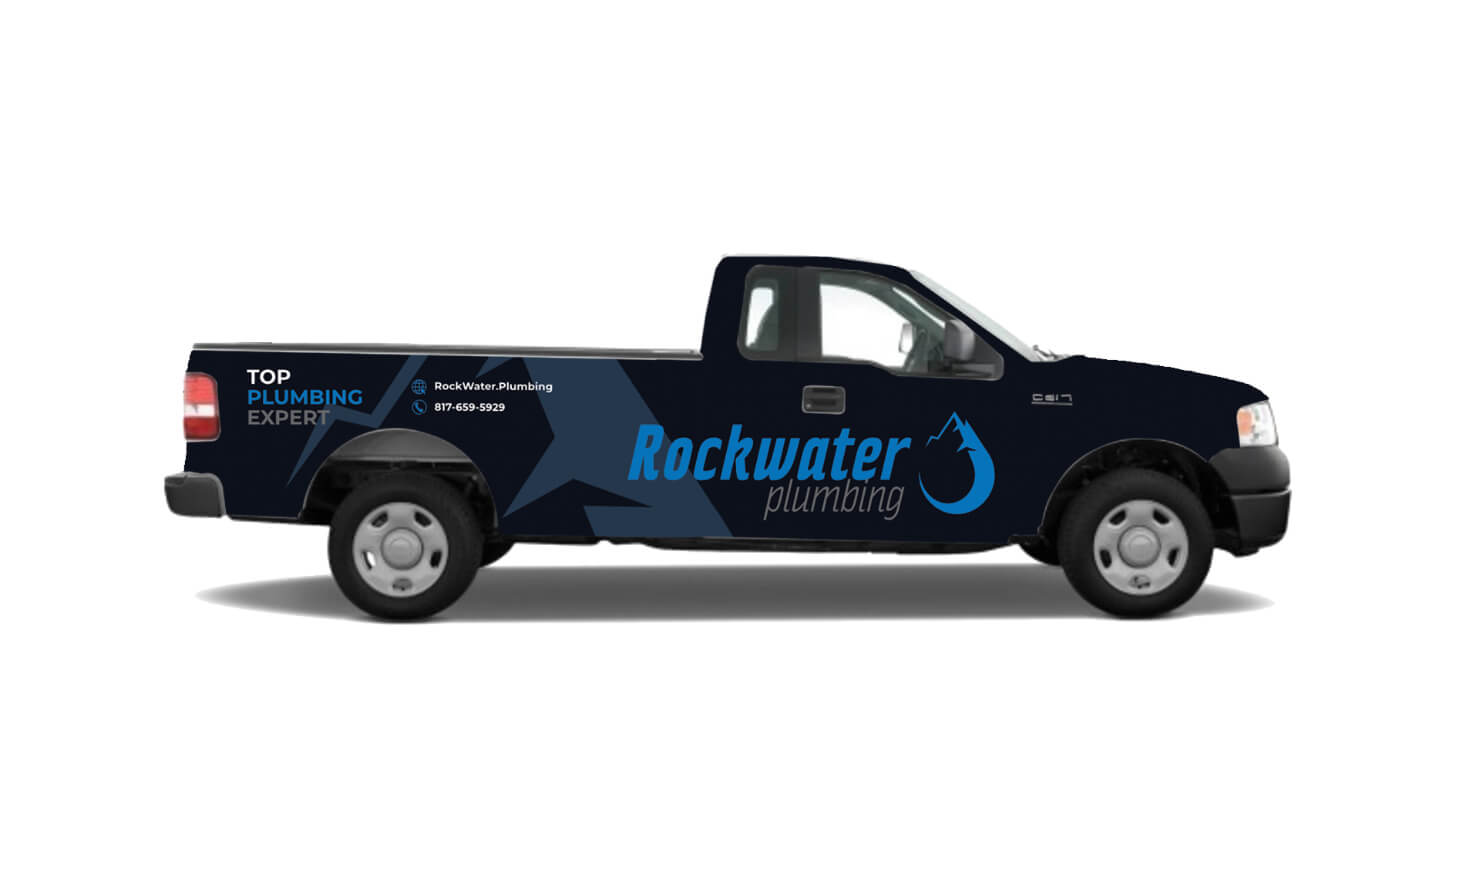 Rockwater Plumbing Vehicle Wraps